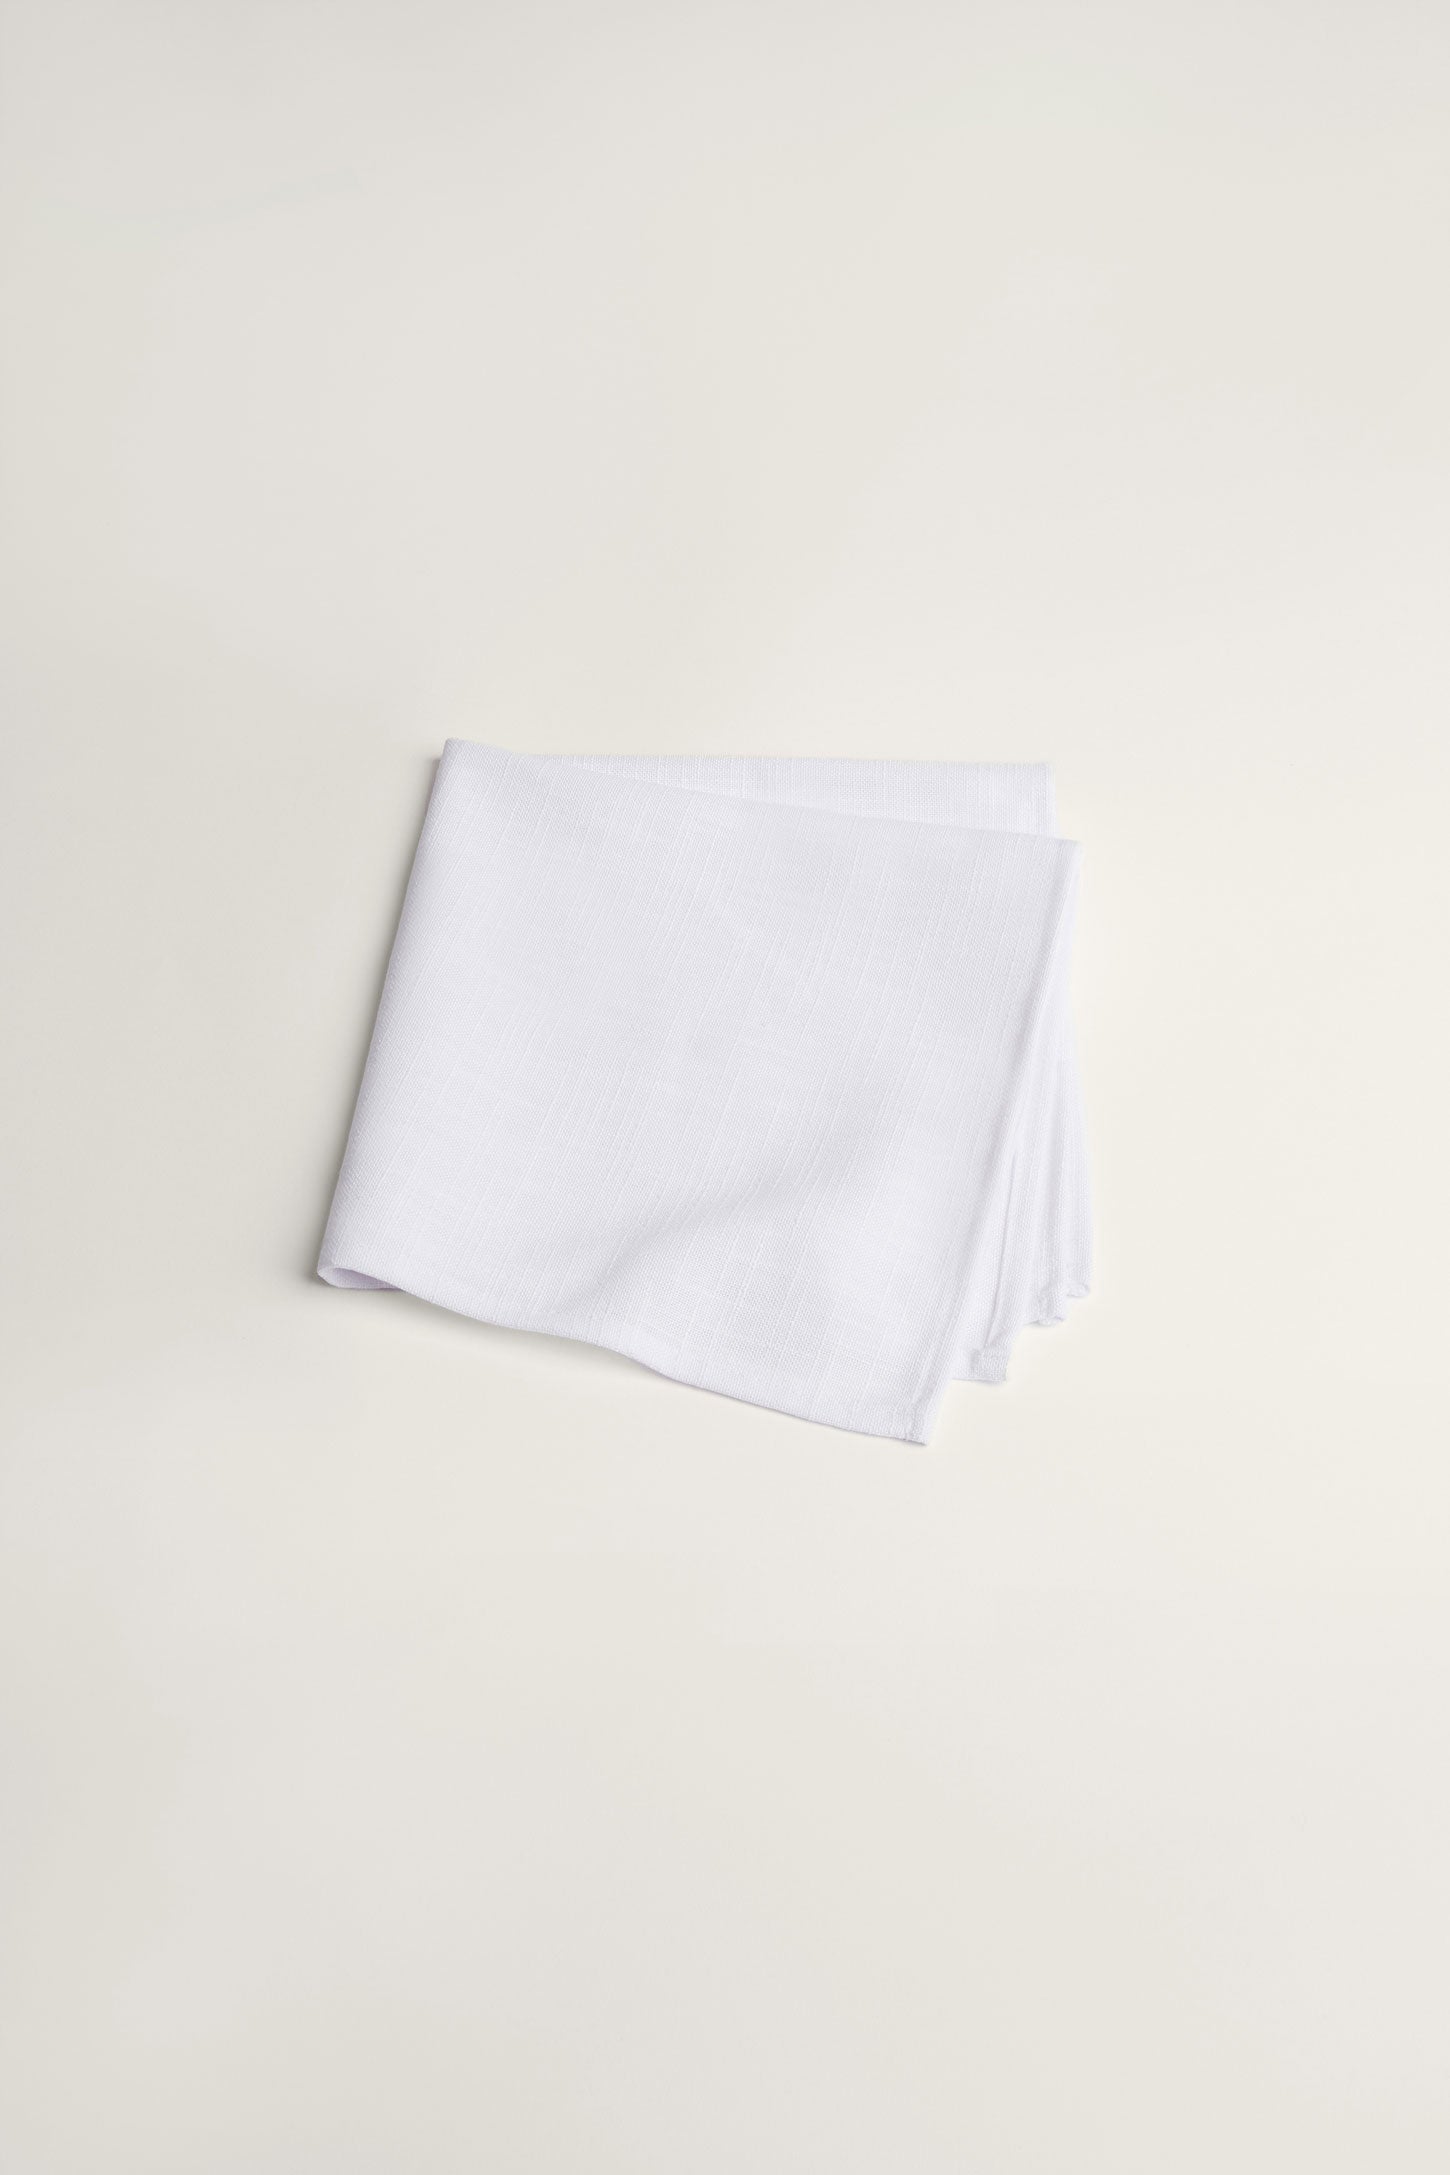 Paquet de 4 serviettes de table texture lin, 2/20$ - Maison && BLANC